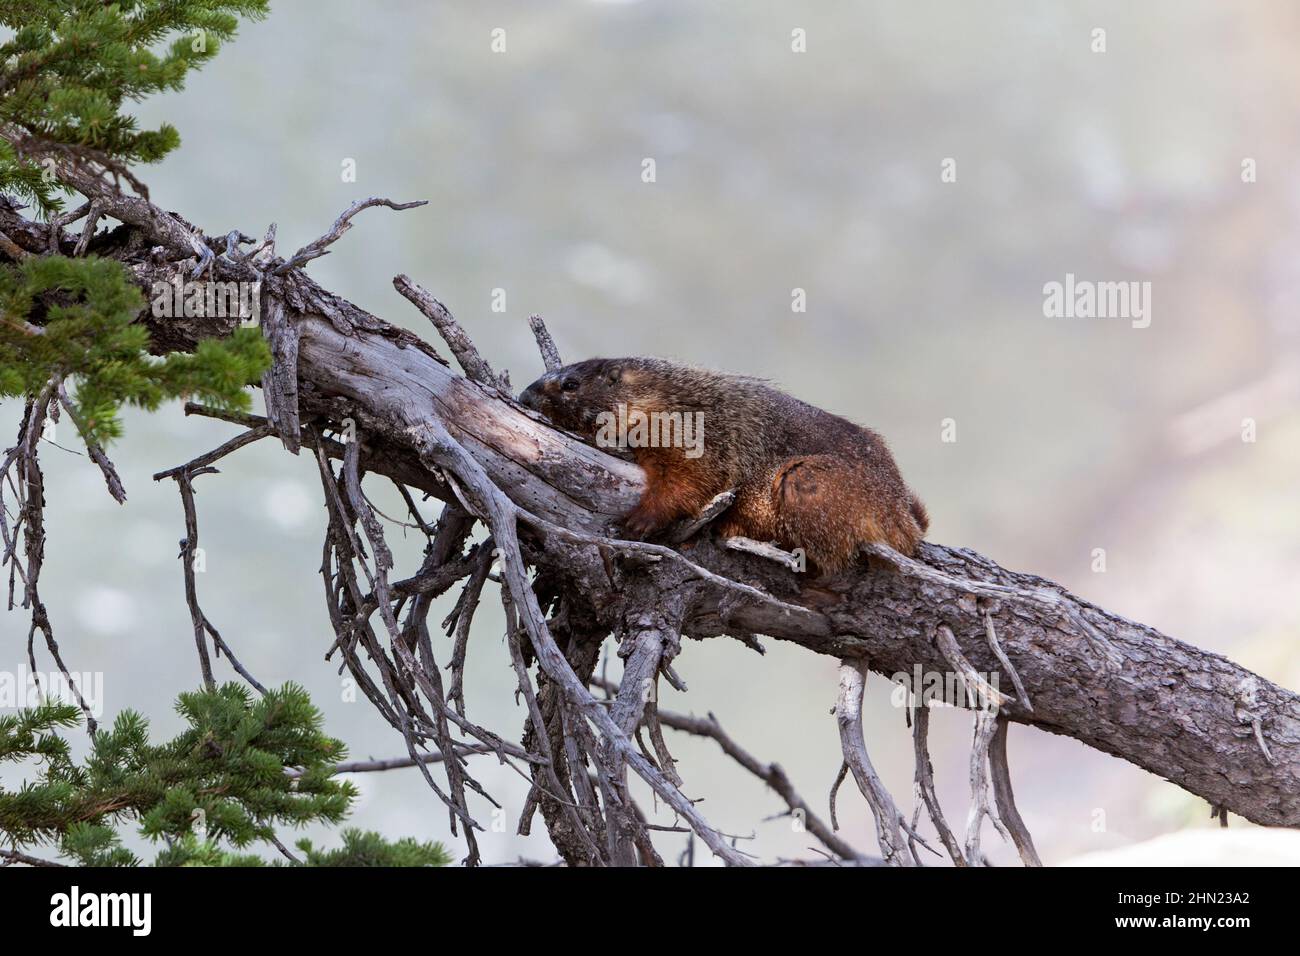 Marmot de vientre amarillo (Marmota flaviventris) descansando a la sombra del árbol caído, Upper Falls, Yellowstone NP, Wyoming, Estados Unidos Foto de stock